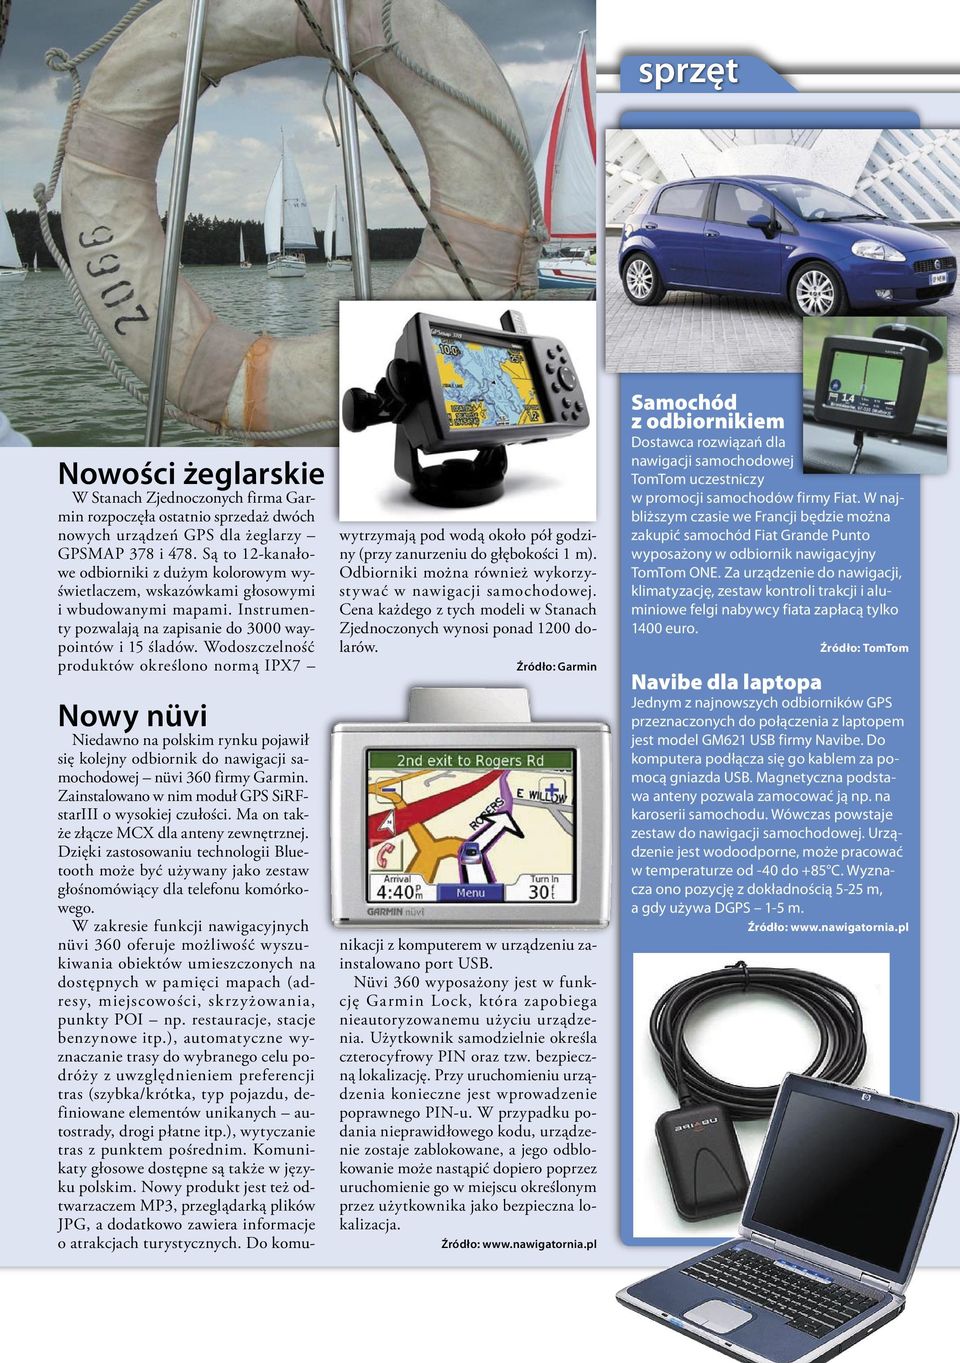 Wodoszczelność produktów określono normą IPX7 Nowy nüvi Niedawno na polskim rynku pojawił się kolejny odbiornik do nawigacji samochodowej nüvi 360 firmy Garmin.